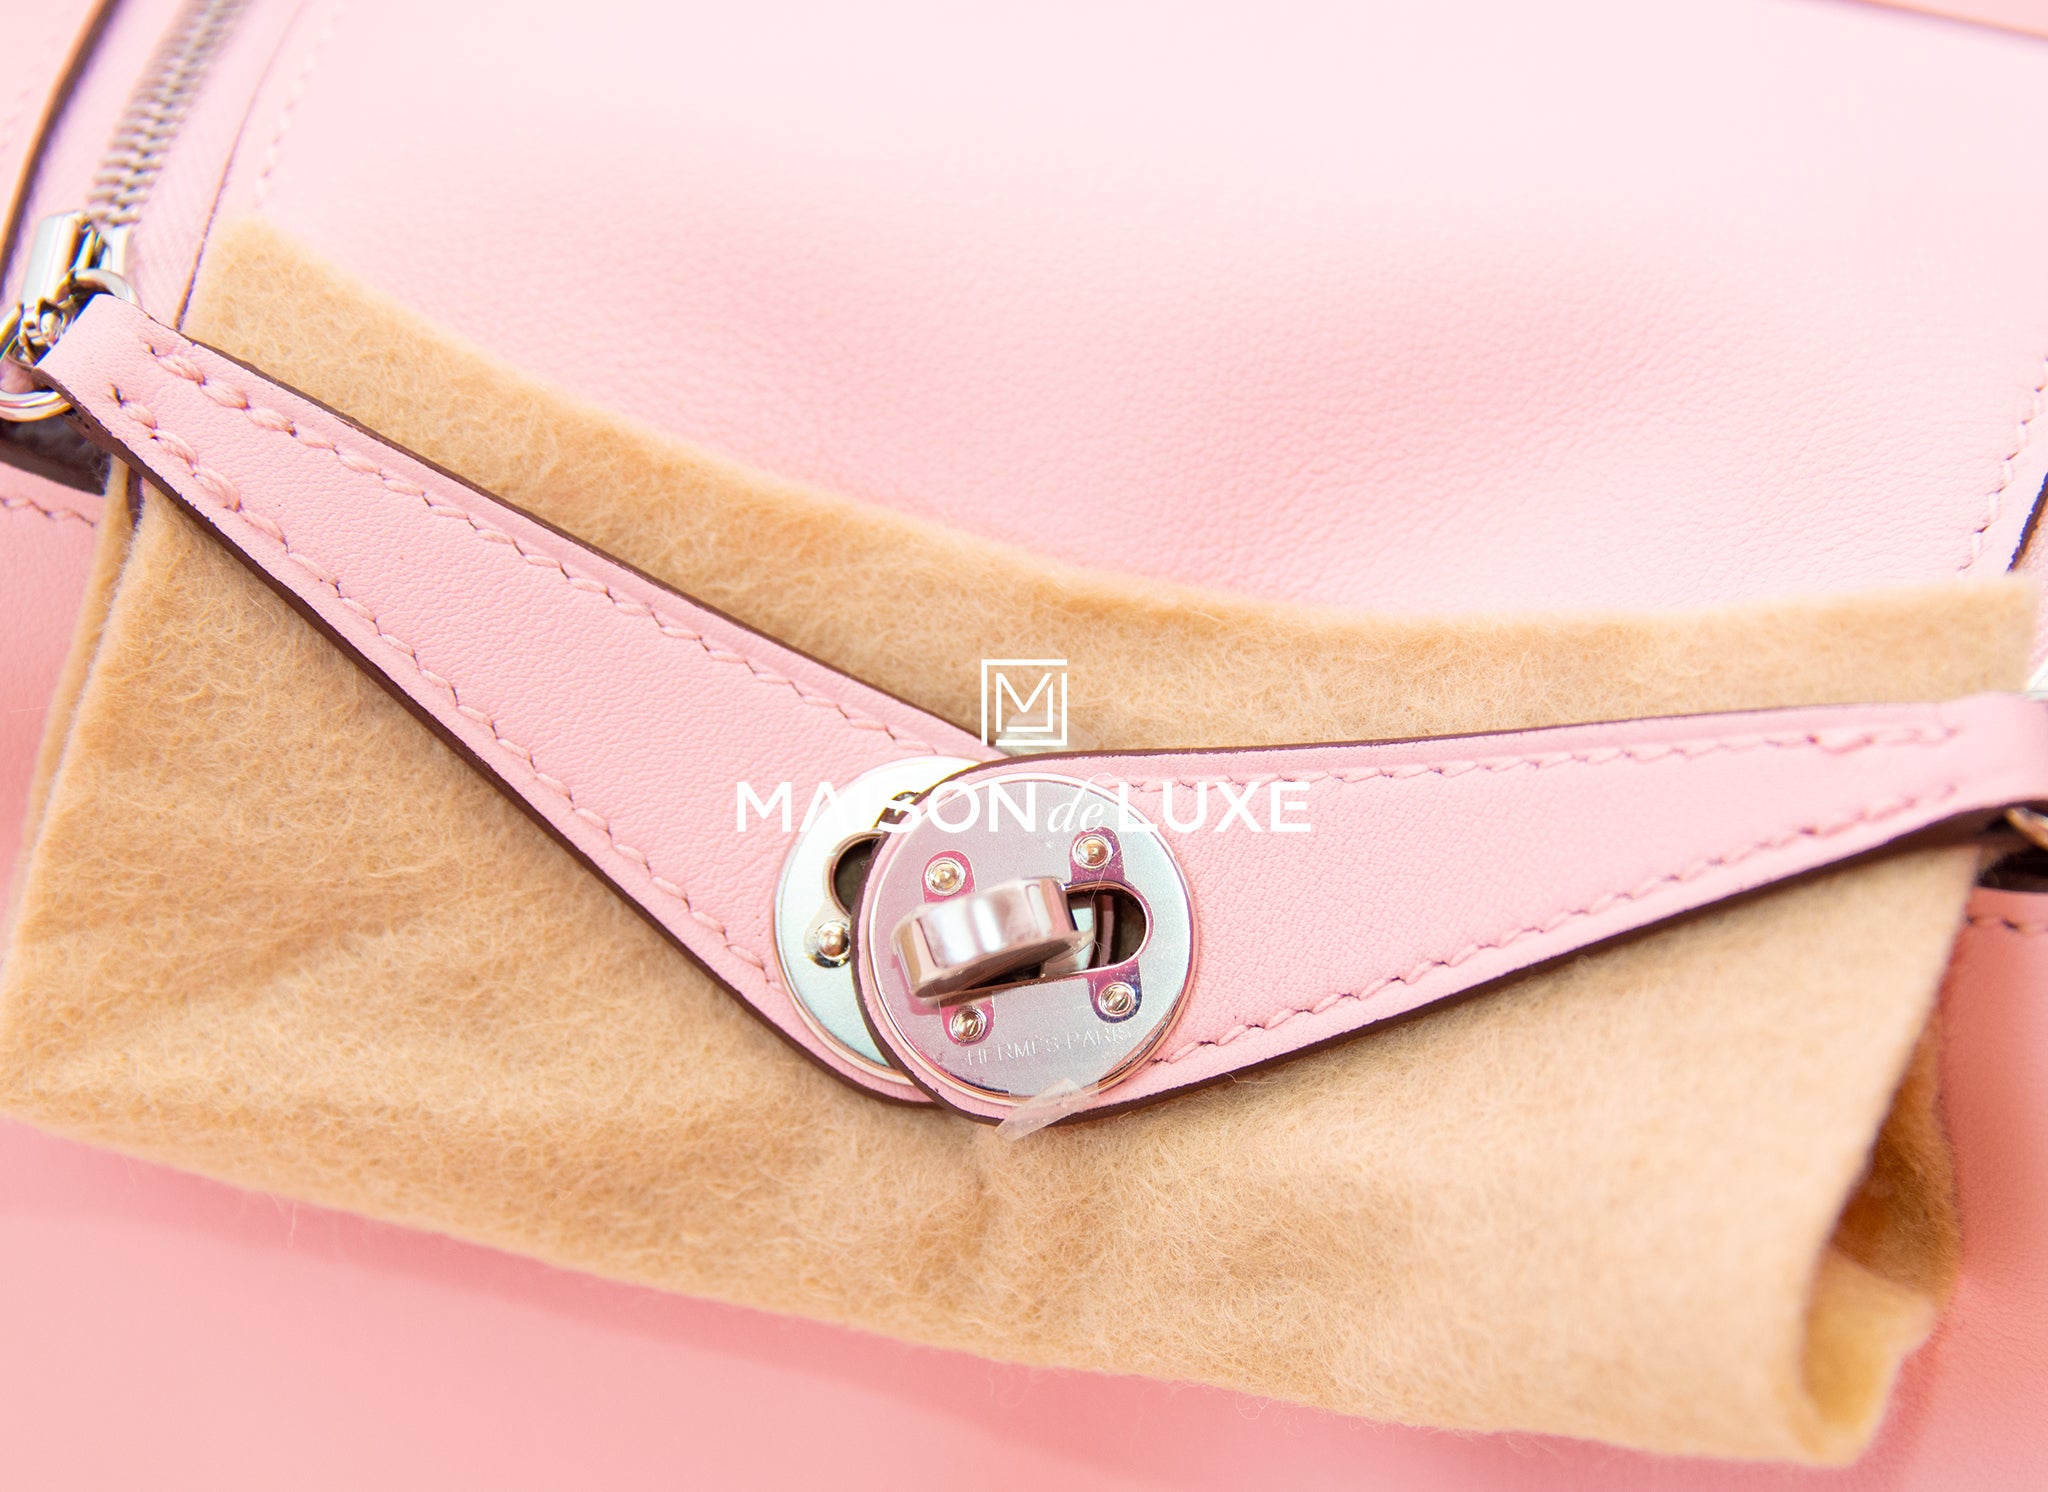 Hermes Mini Kelly I Bag 3Q Pink Sakura Swift GHW